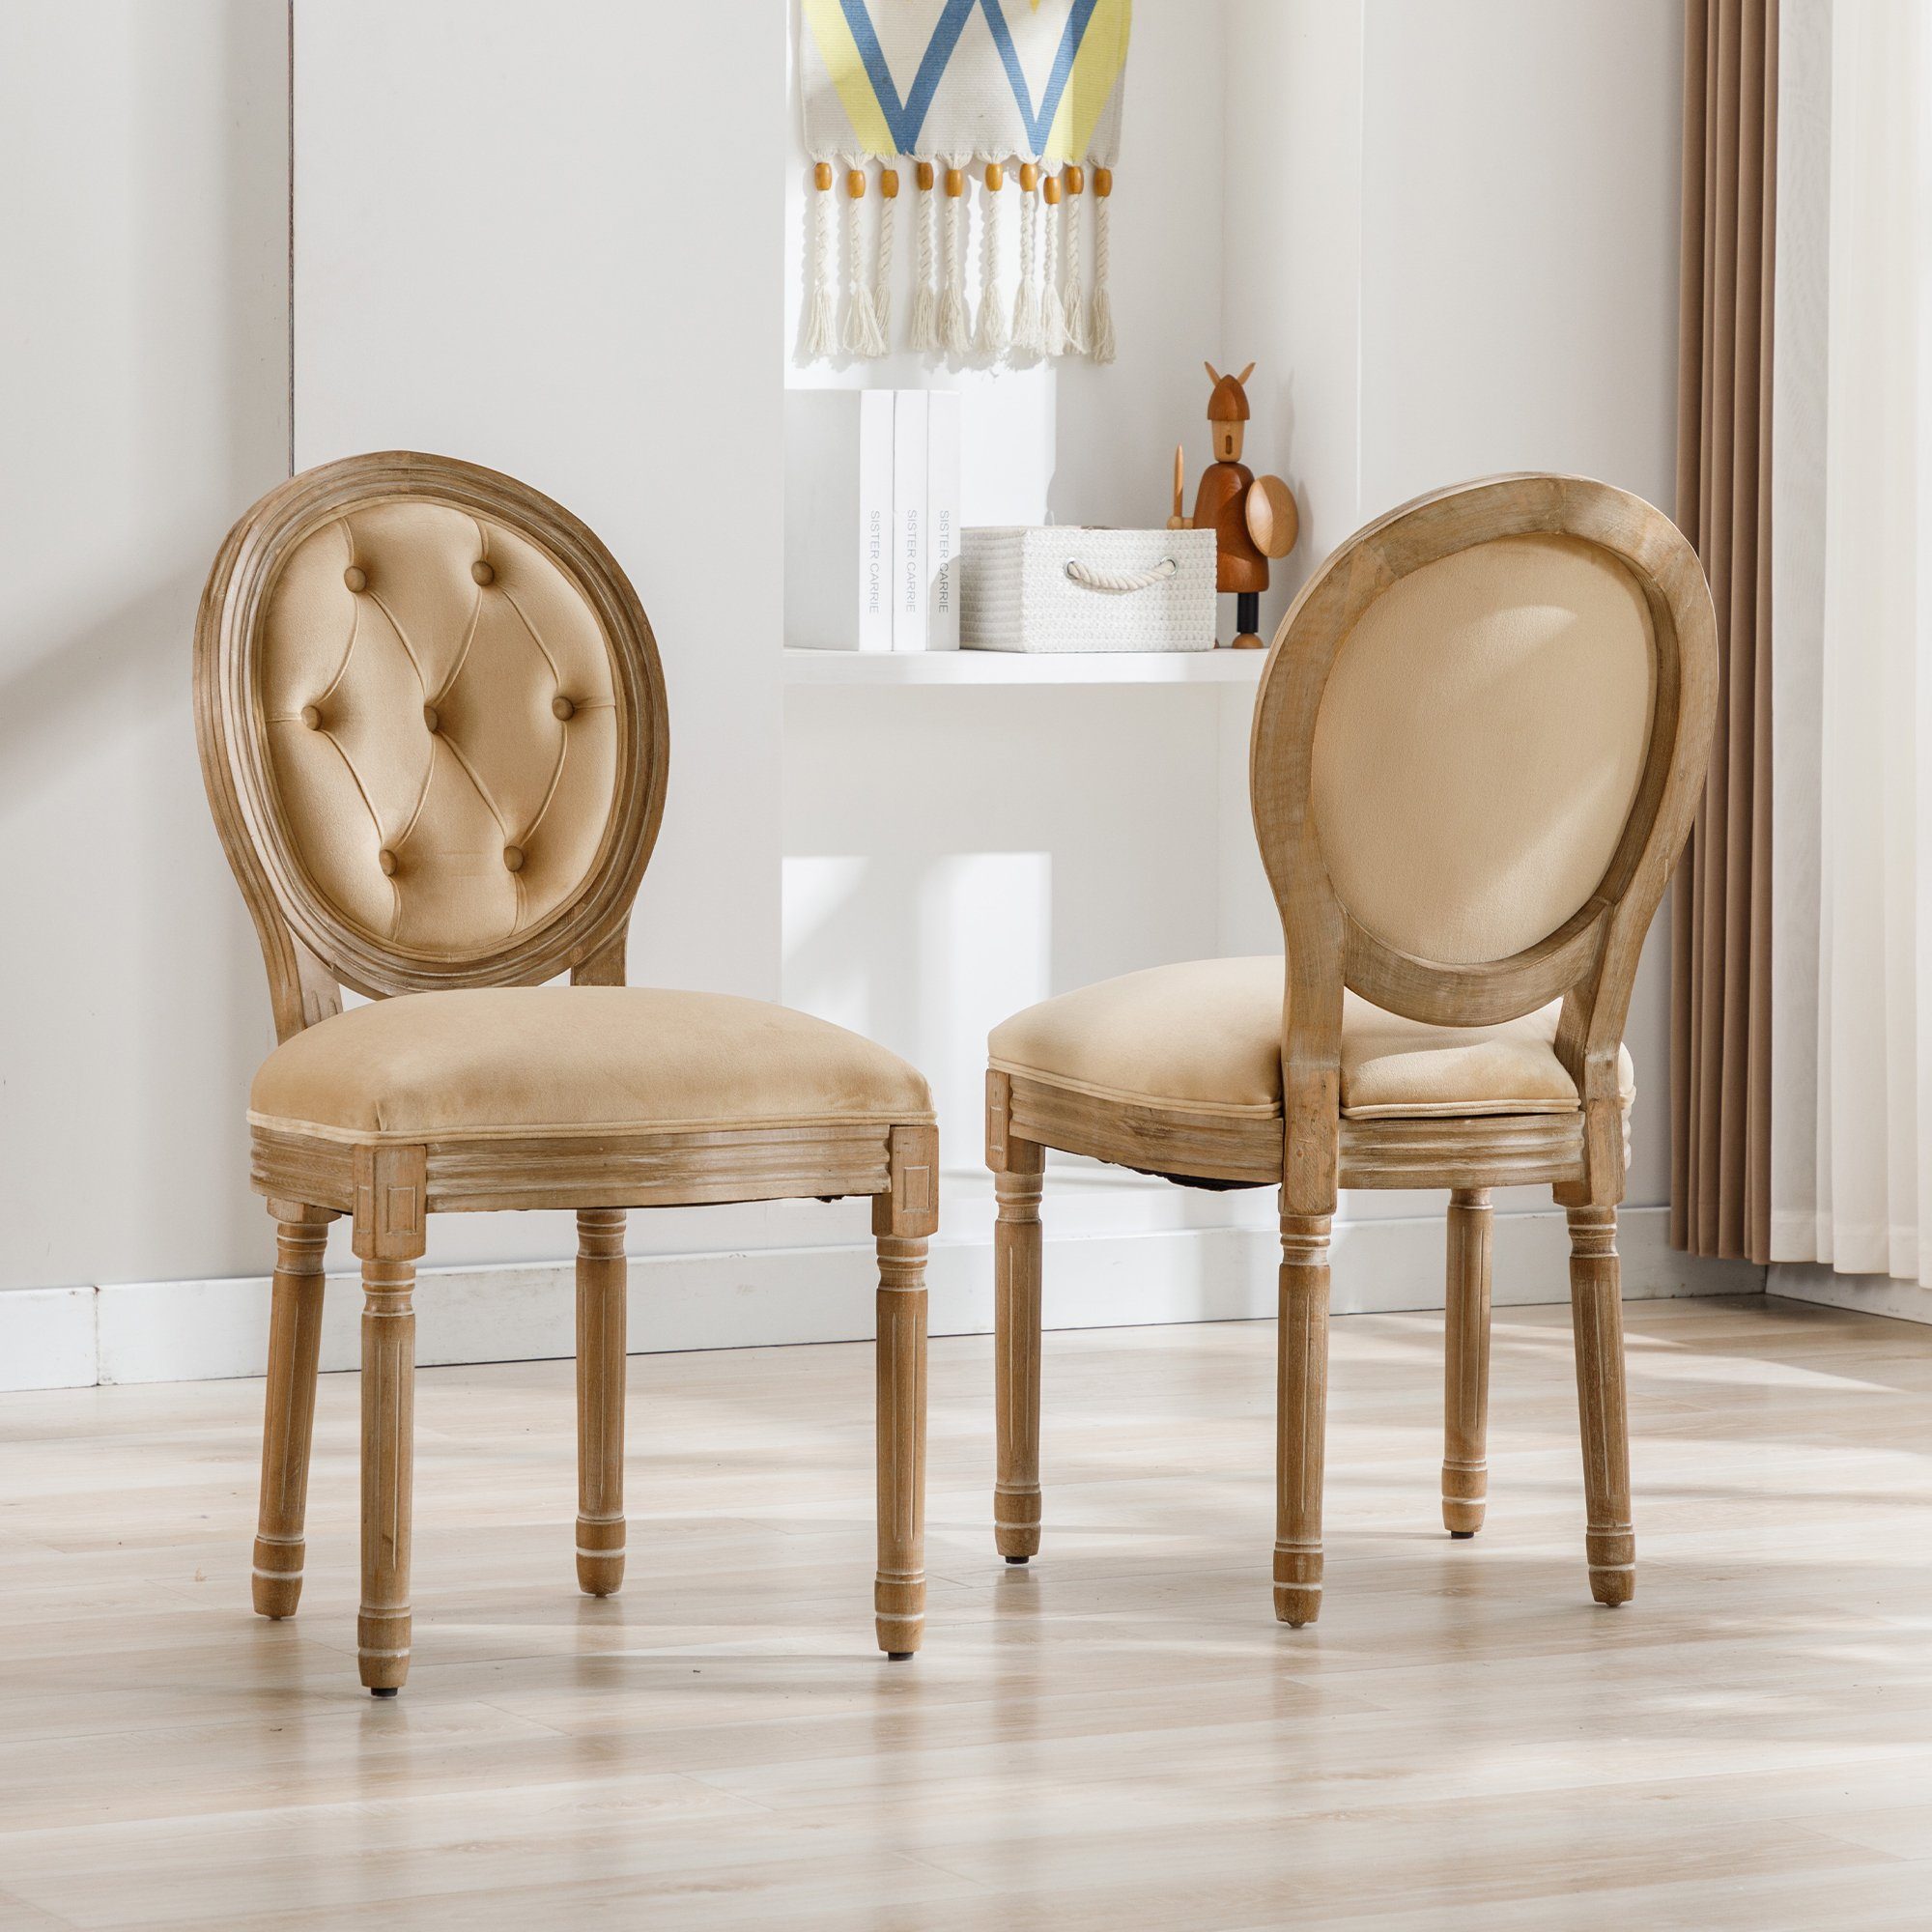 OKWISH Esszimmerstuhl (Beine aus Massivholz, gepolsterte Sitzfläche aus Samt, beige, 2 St)